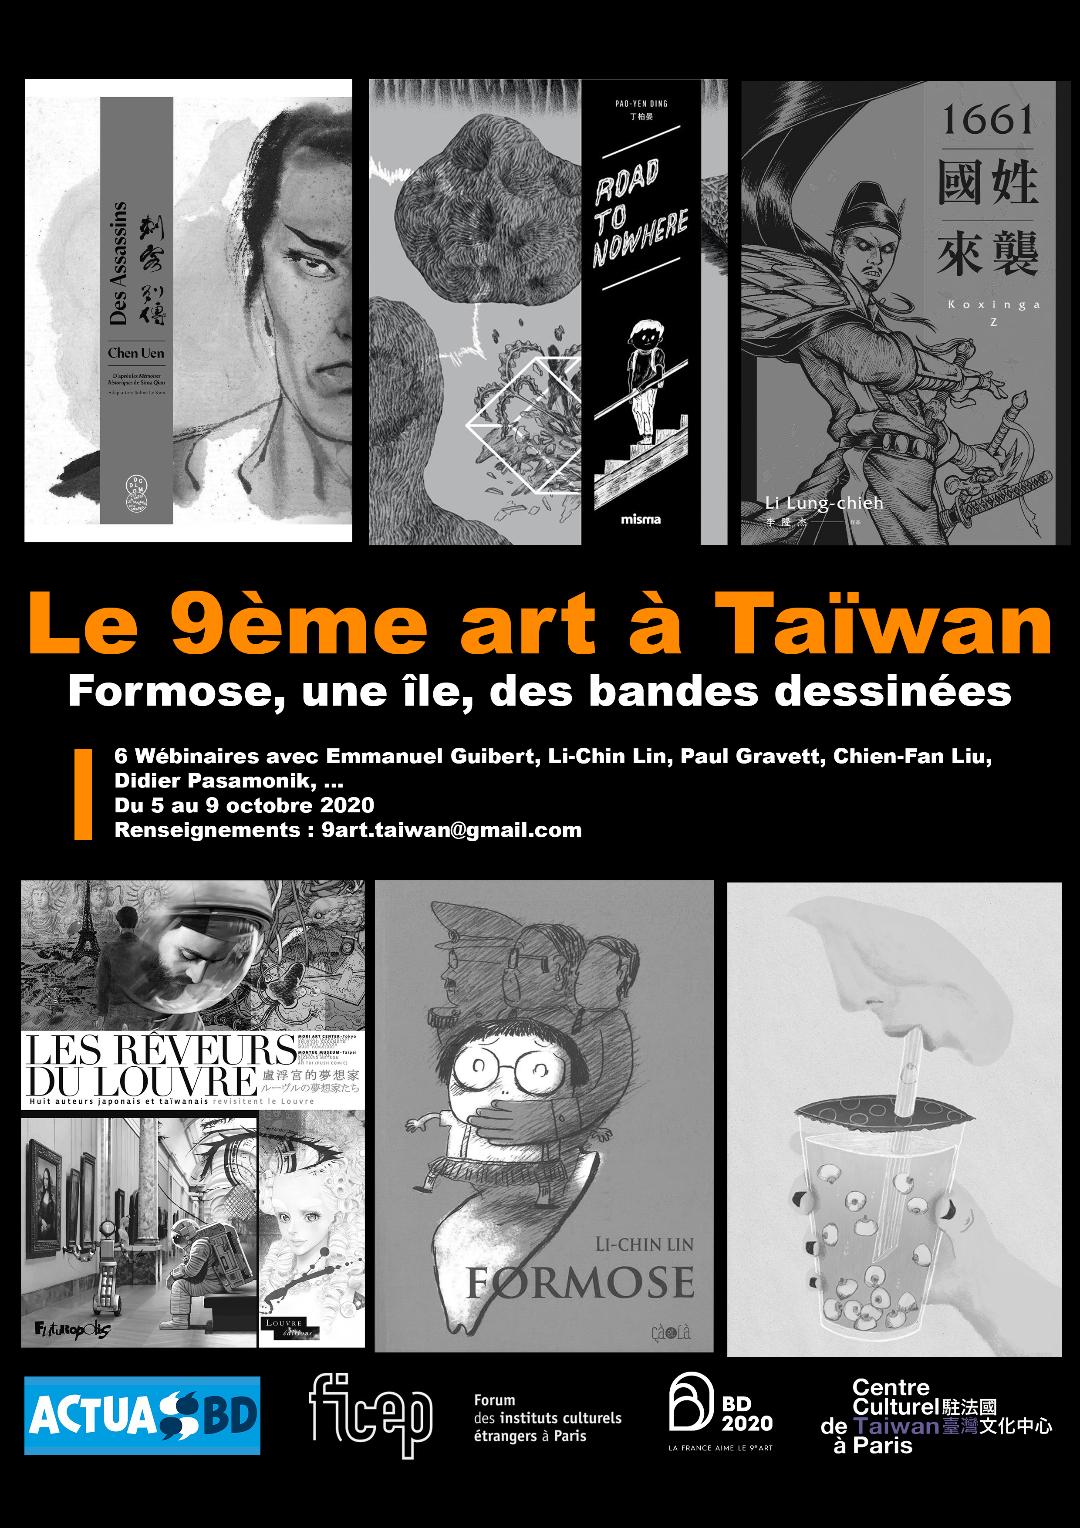 Le 9e art à Taïwan  